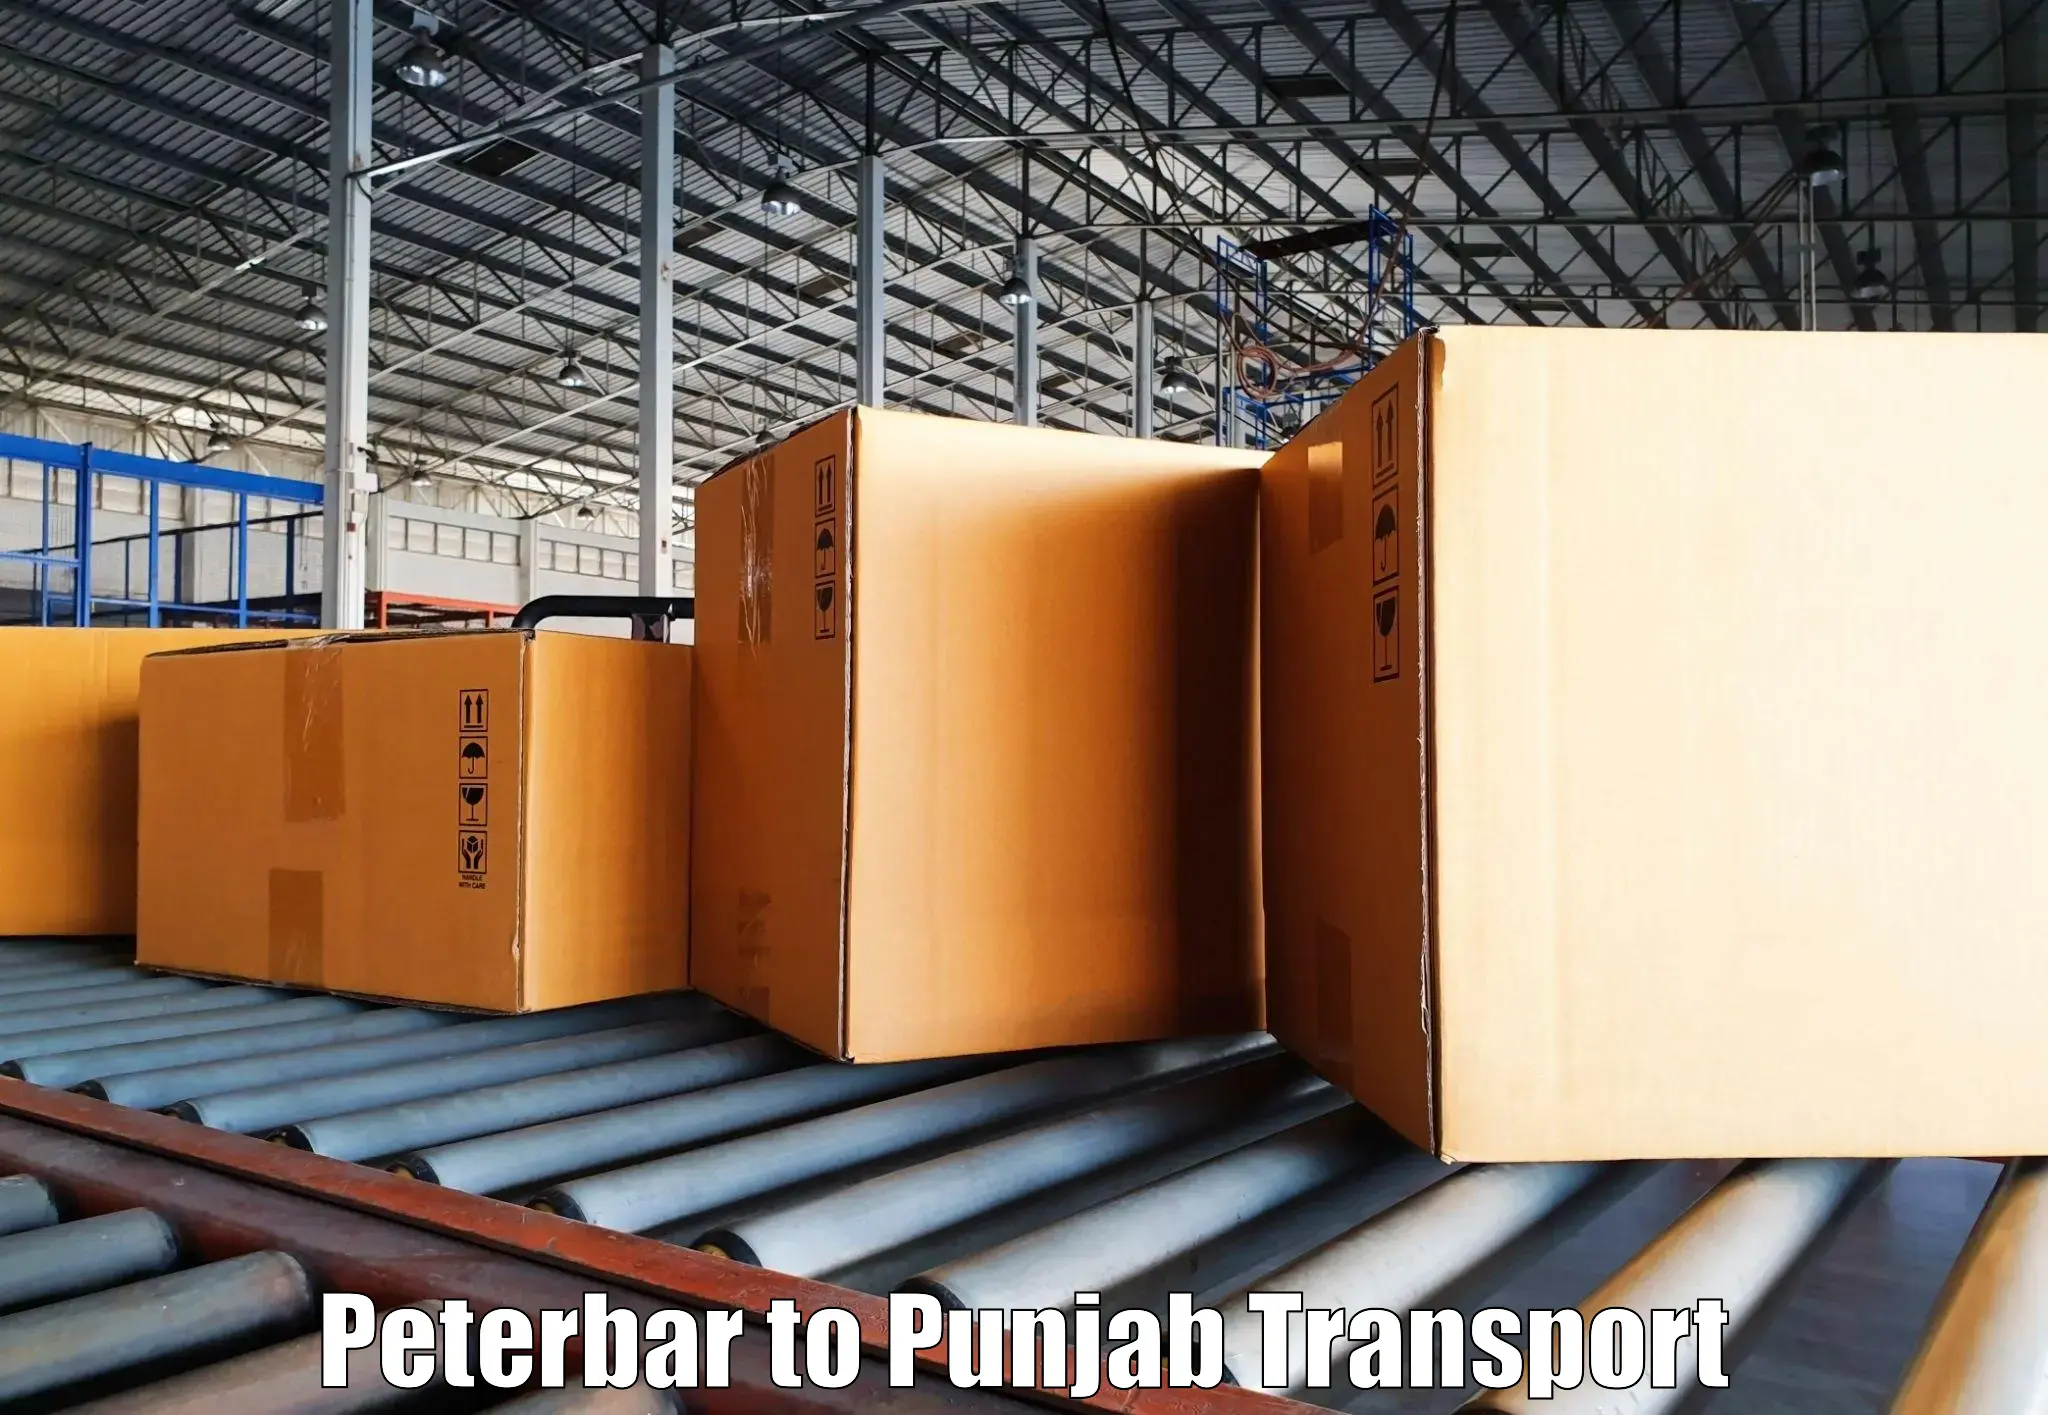 Daily transport service Peterbar to Anandpur Sahib